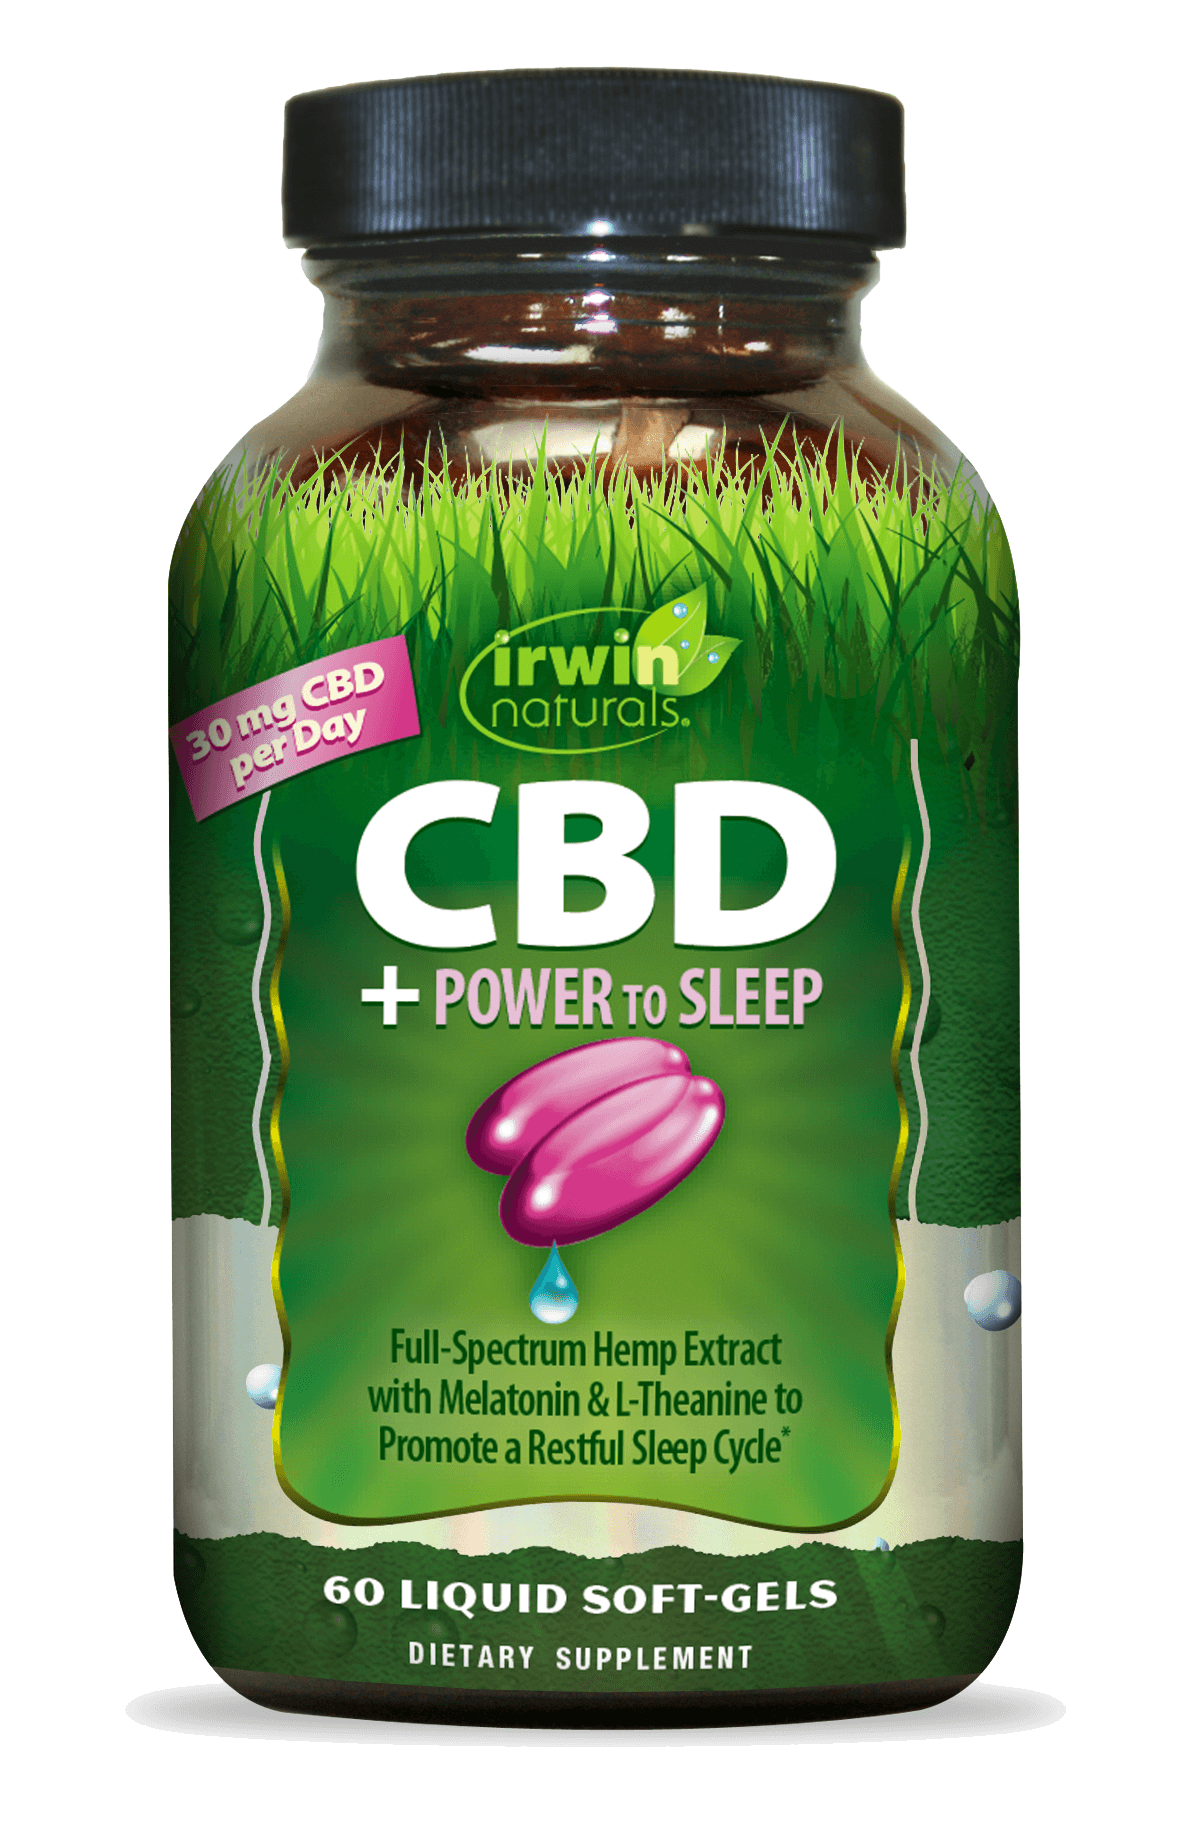 CBD Power to Sleep 30 mg CBD Per Day by Irwin Naturals